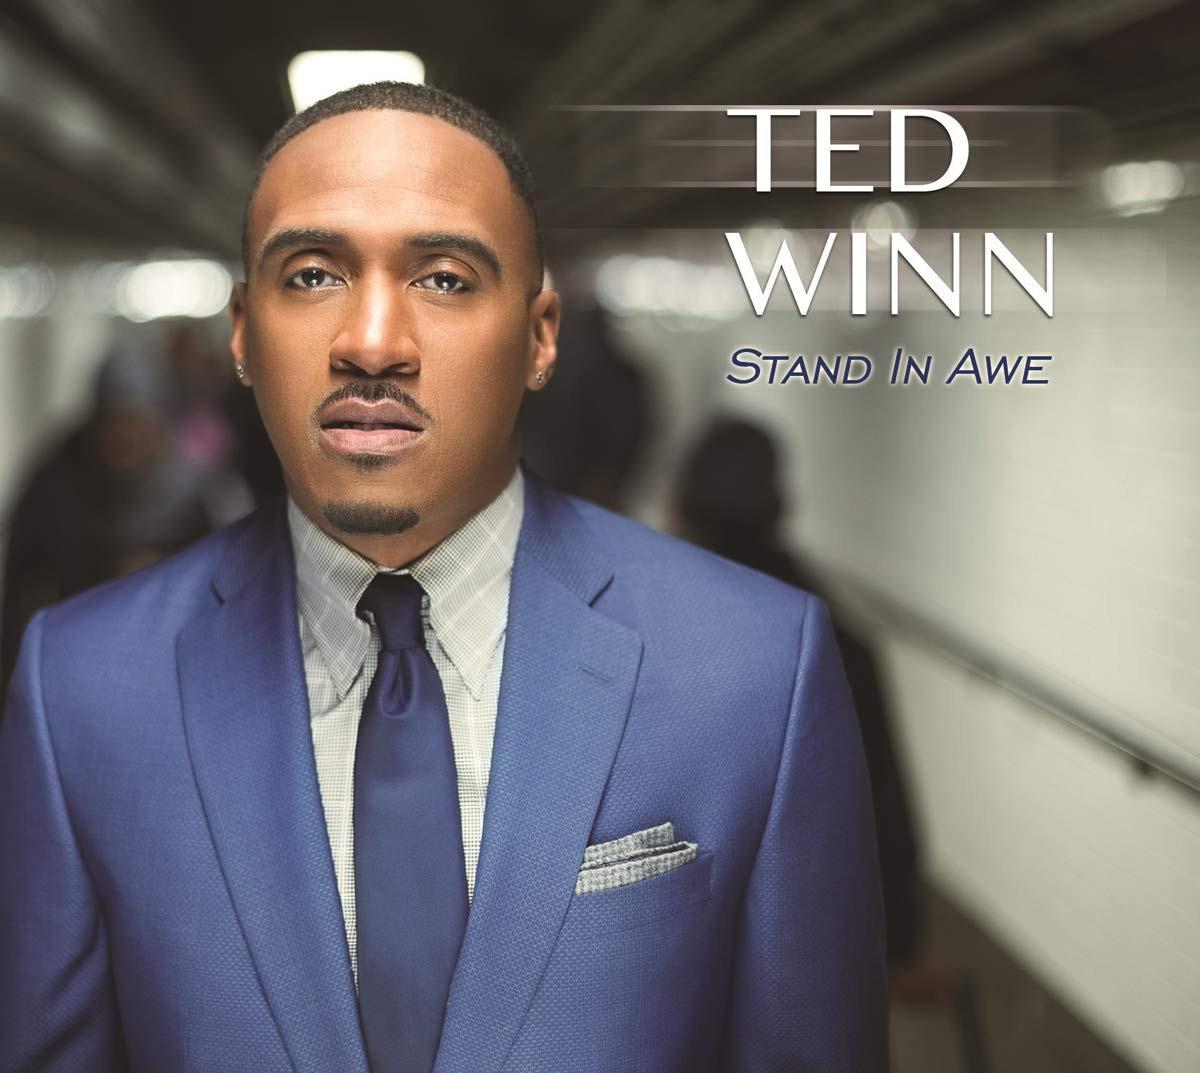 Winn, Ted - Stand in Awe